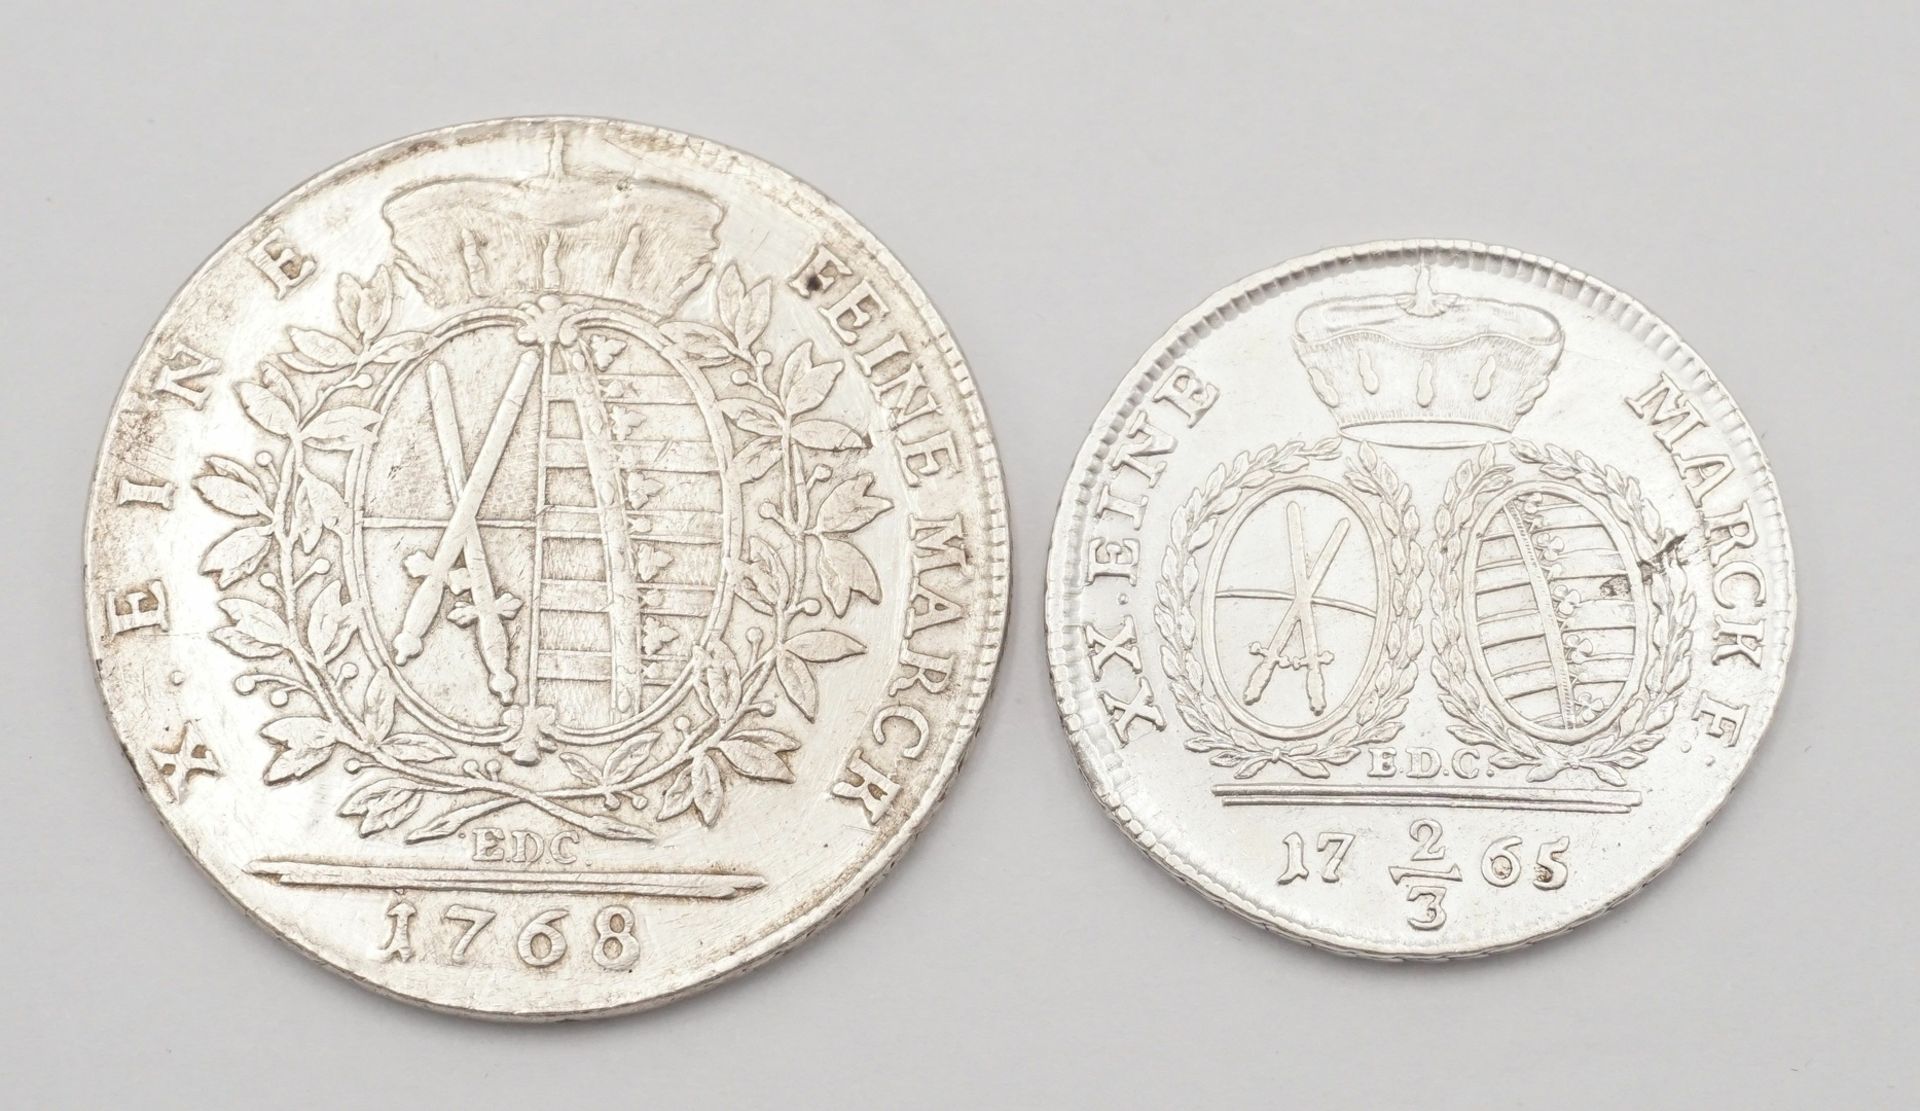 Sachsen, ein Taler 1768 und 2/3 Taler 1765, Silber - Image 2 of 2